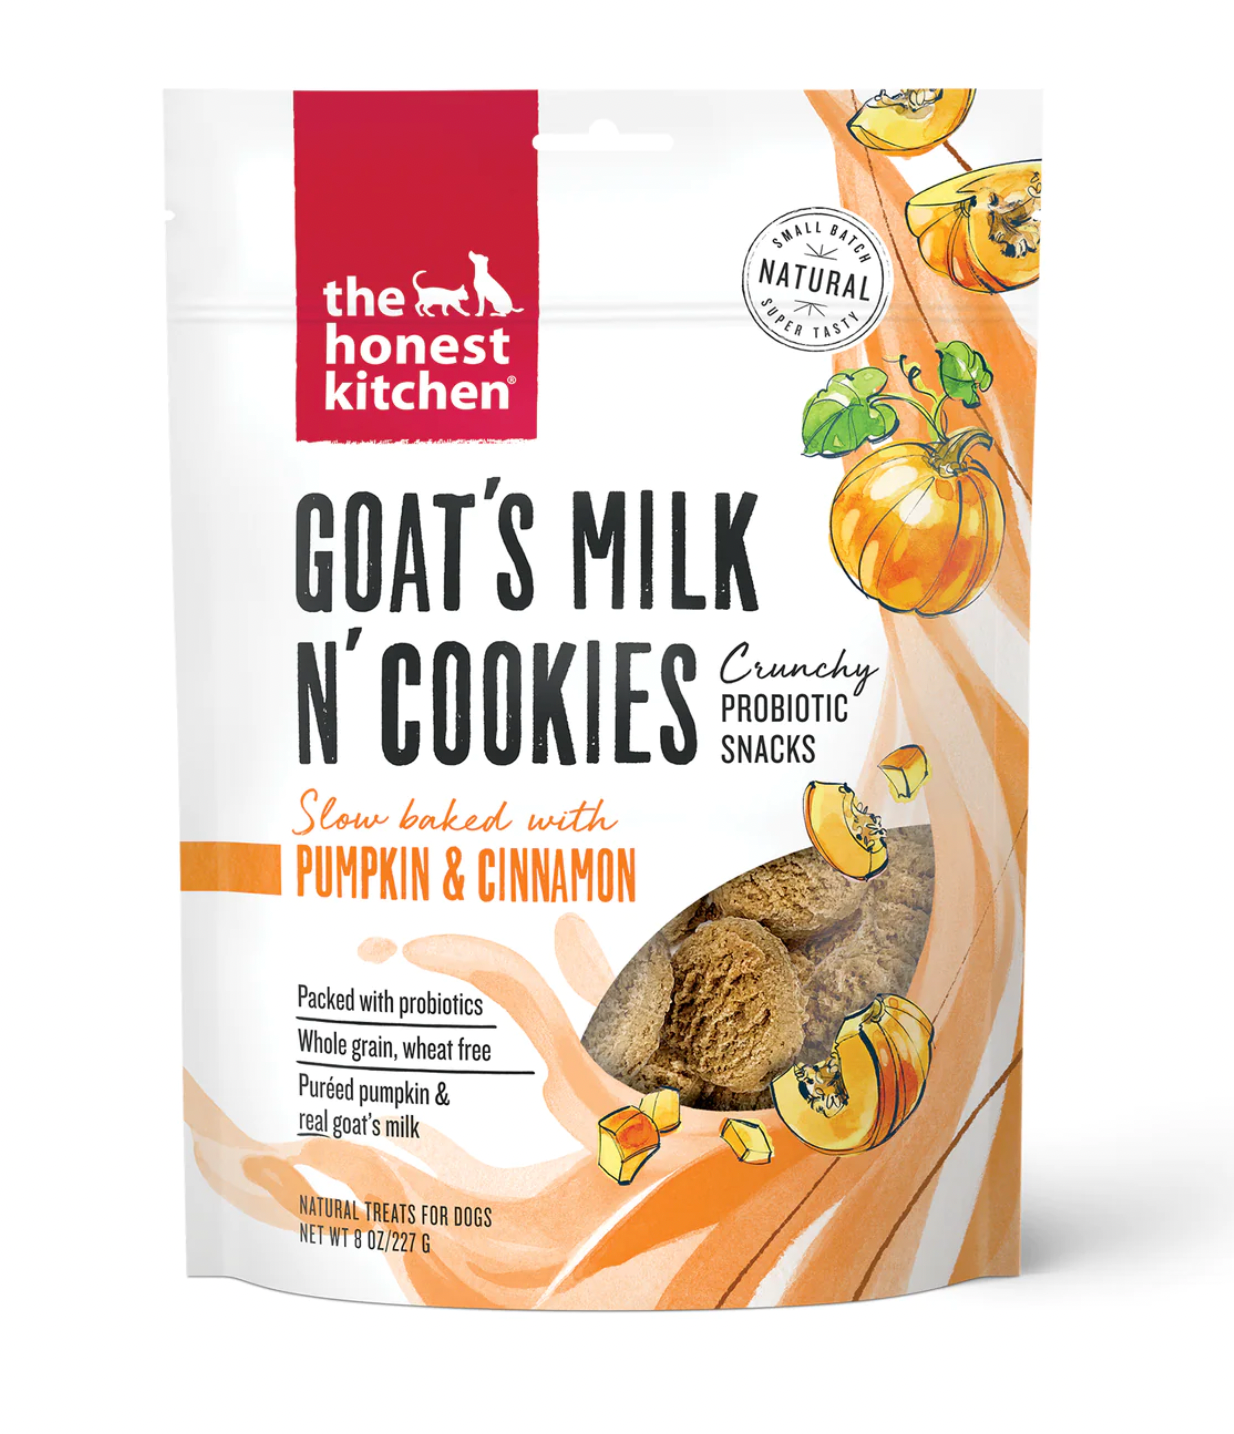 The Honest Kitchen Goat's Milk N Cookies for Dogs, Pumpkin & Cinnamon